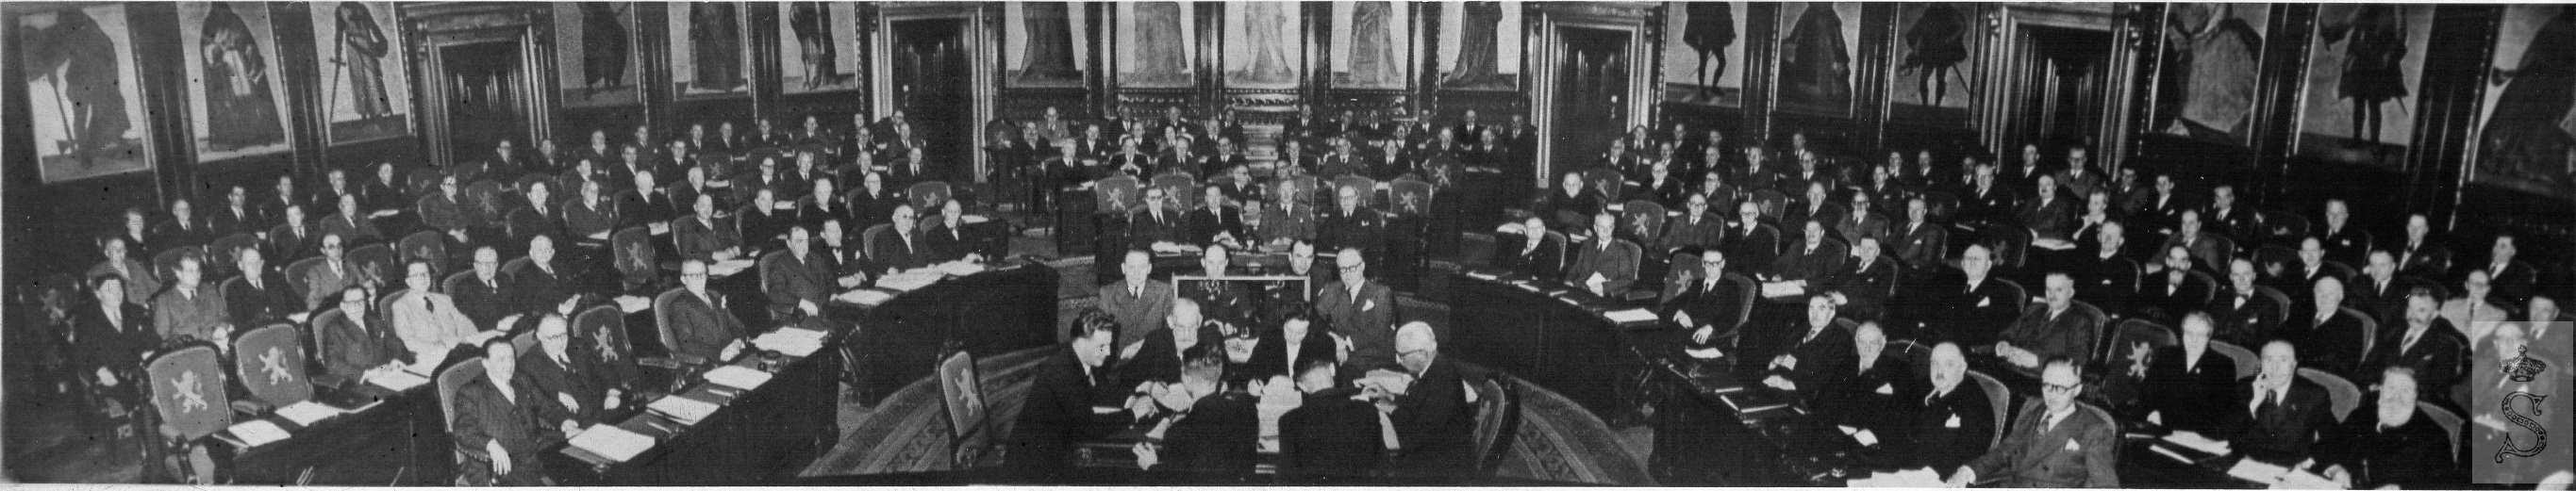 Photo de l'assemblée du Sénat en 1949